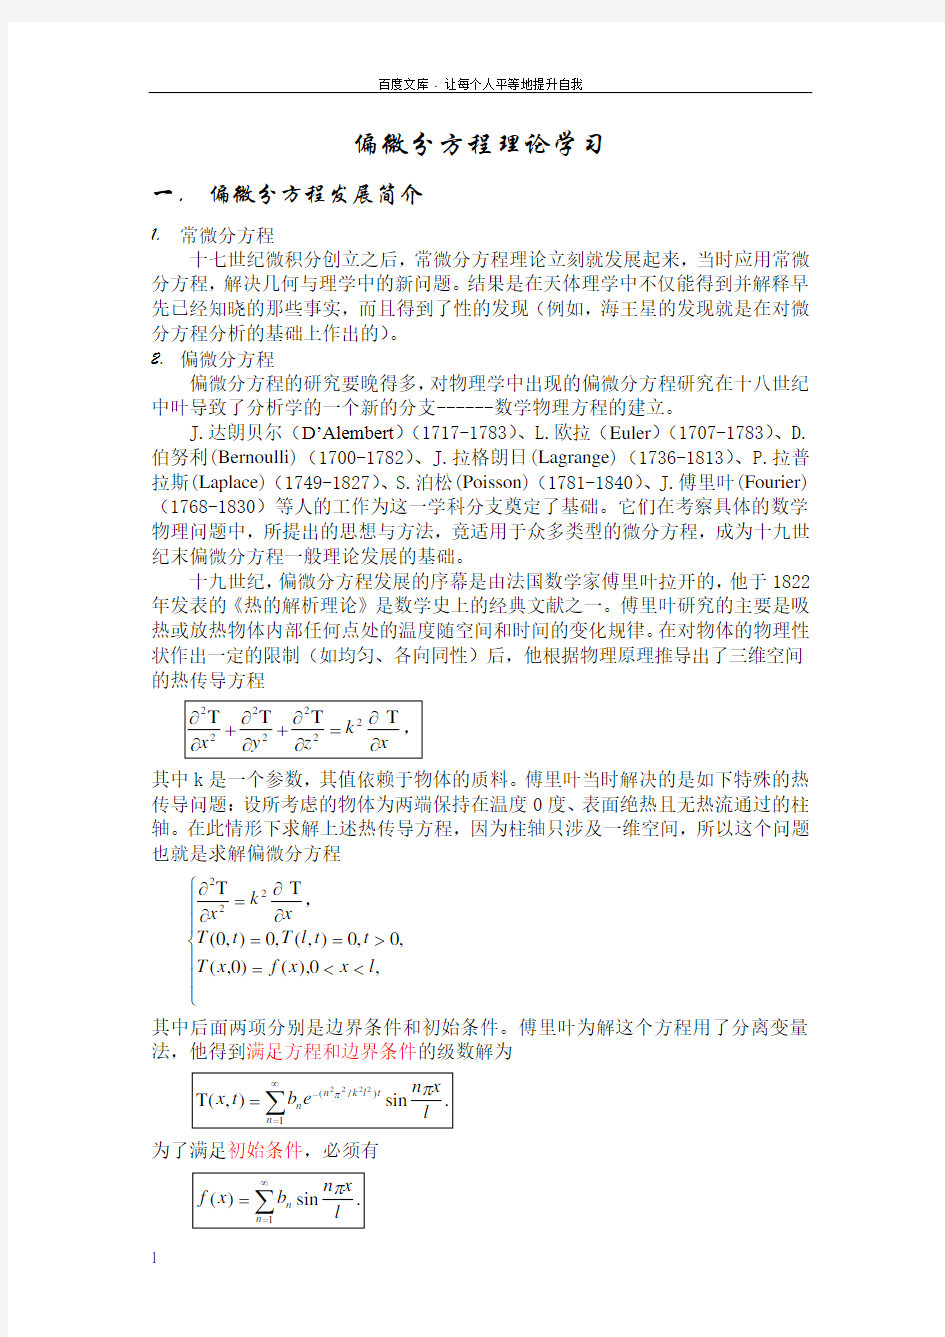 偏微分方程理论学习中国科学技术大学